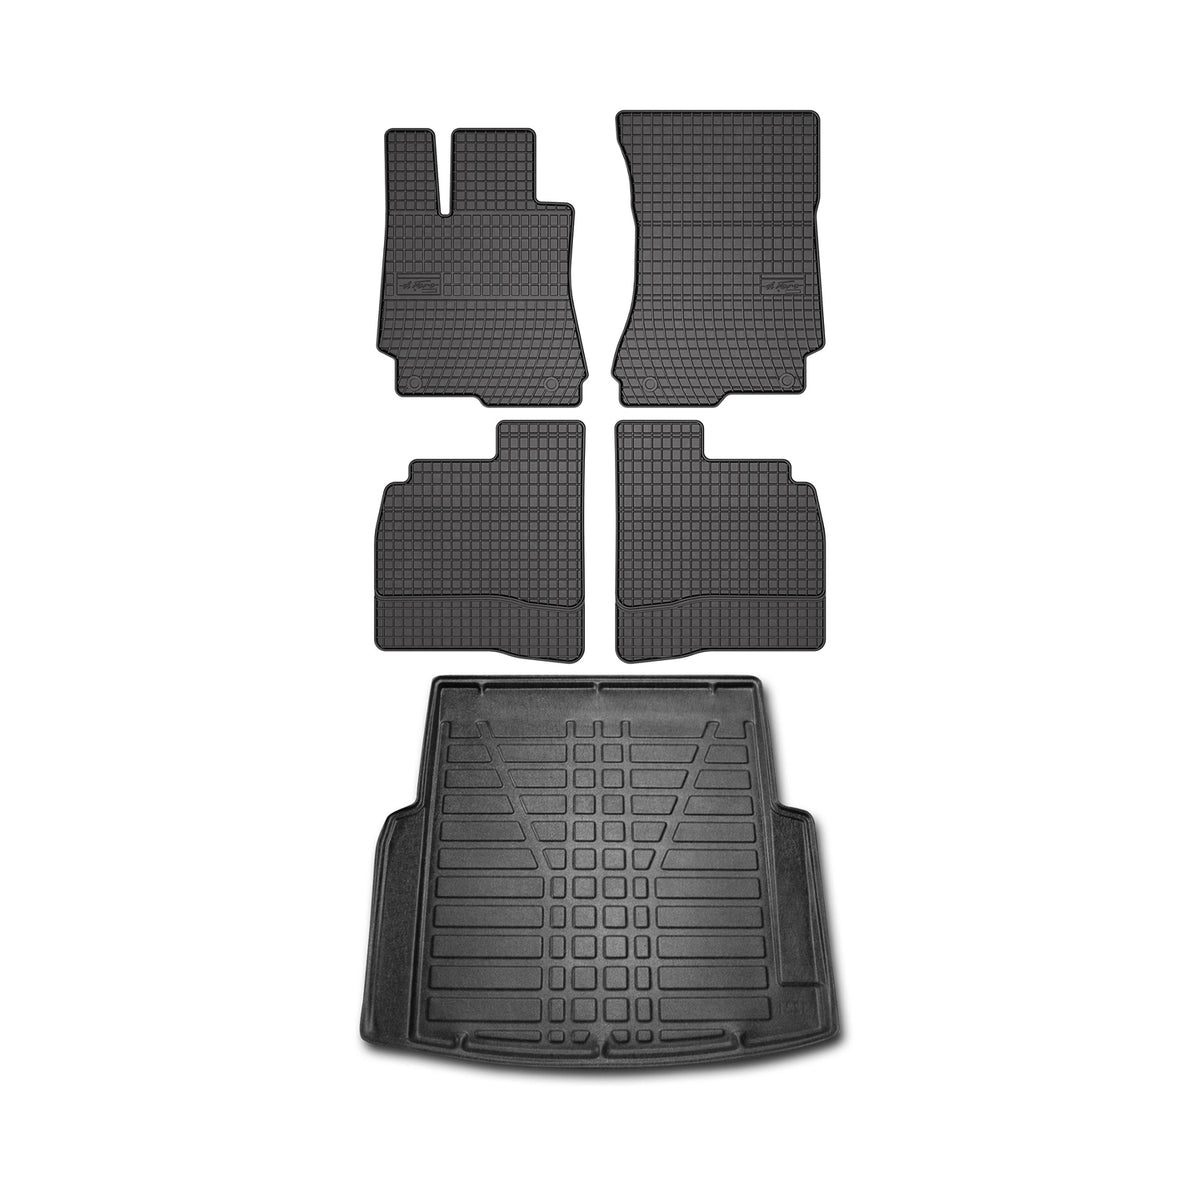 Fußmatten & Kofferraumwanne Set für Mercedes S Klasse W221 2005-2013 Gummi 5x